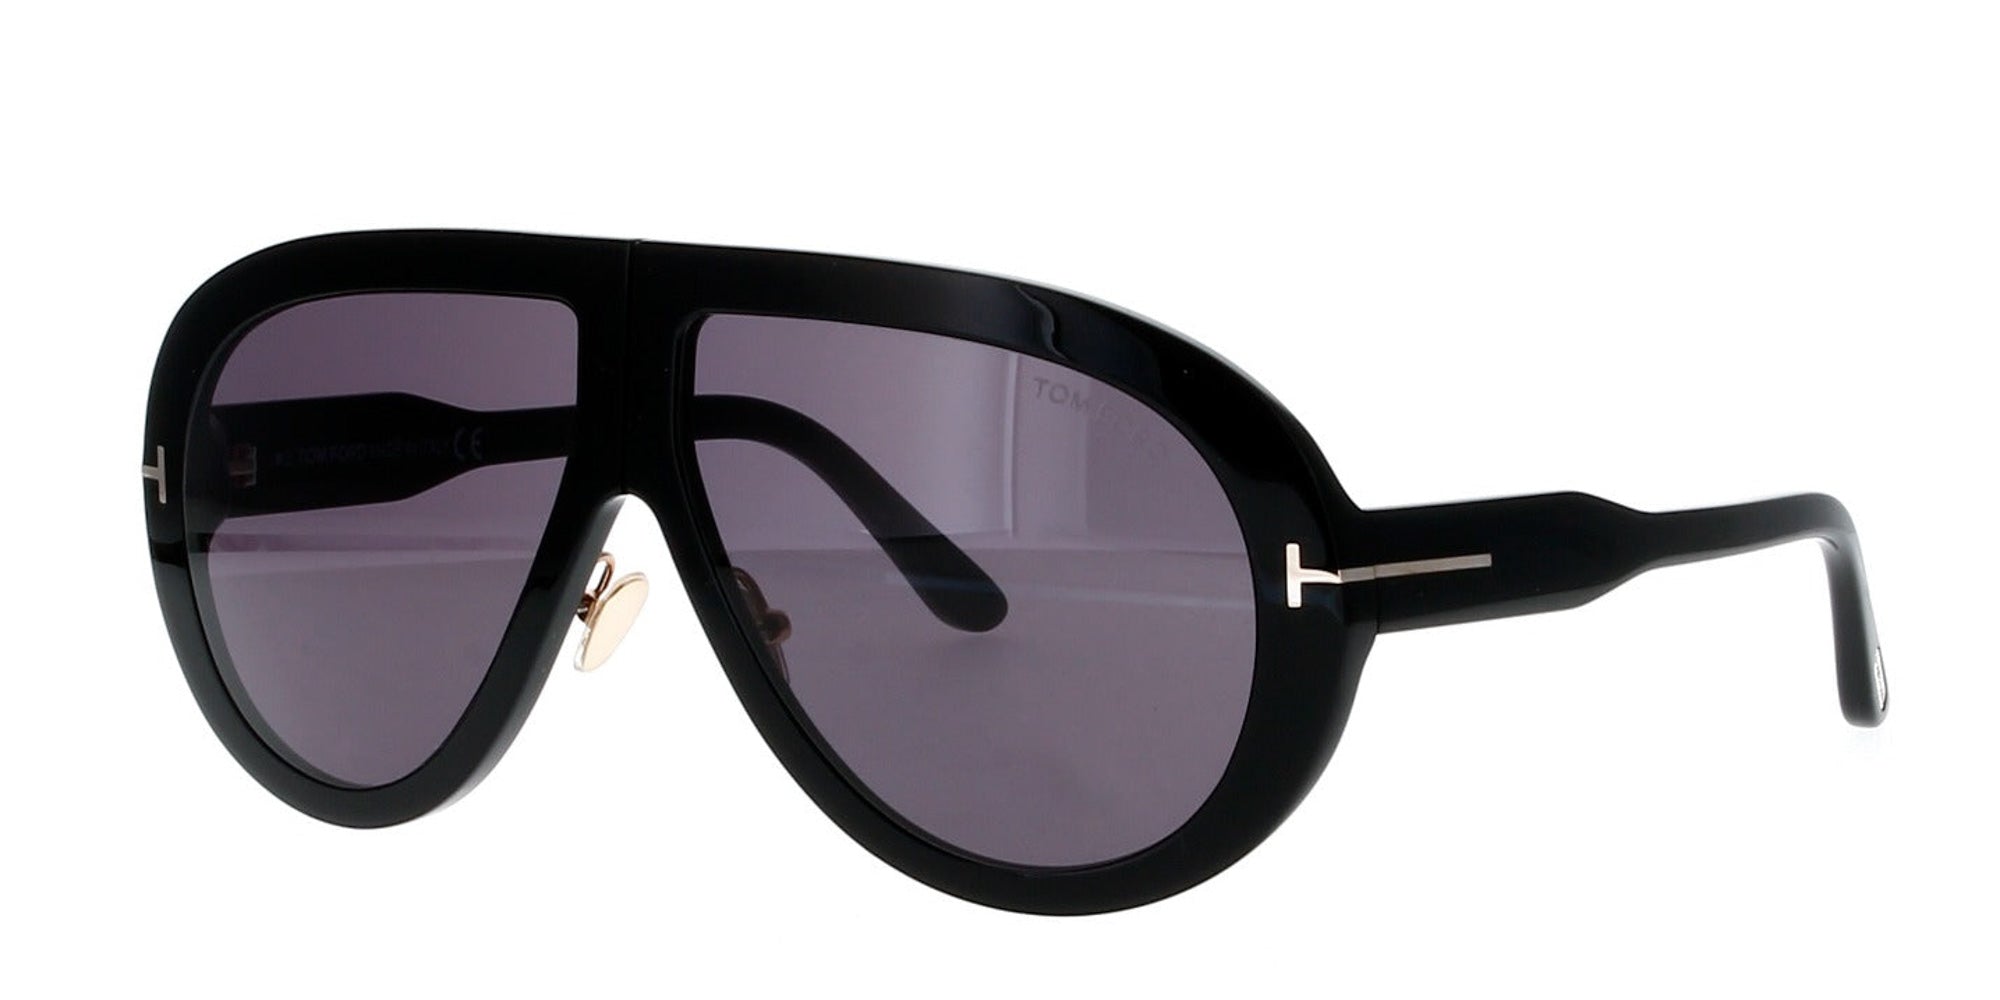 Ford Troy Aviator Sunglasses | Fashion Eyewear US